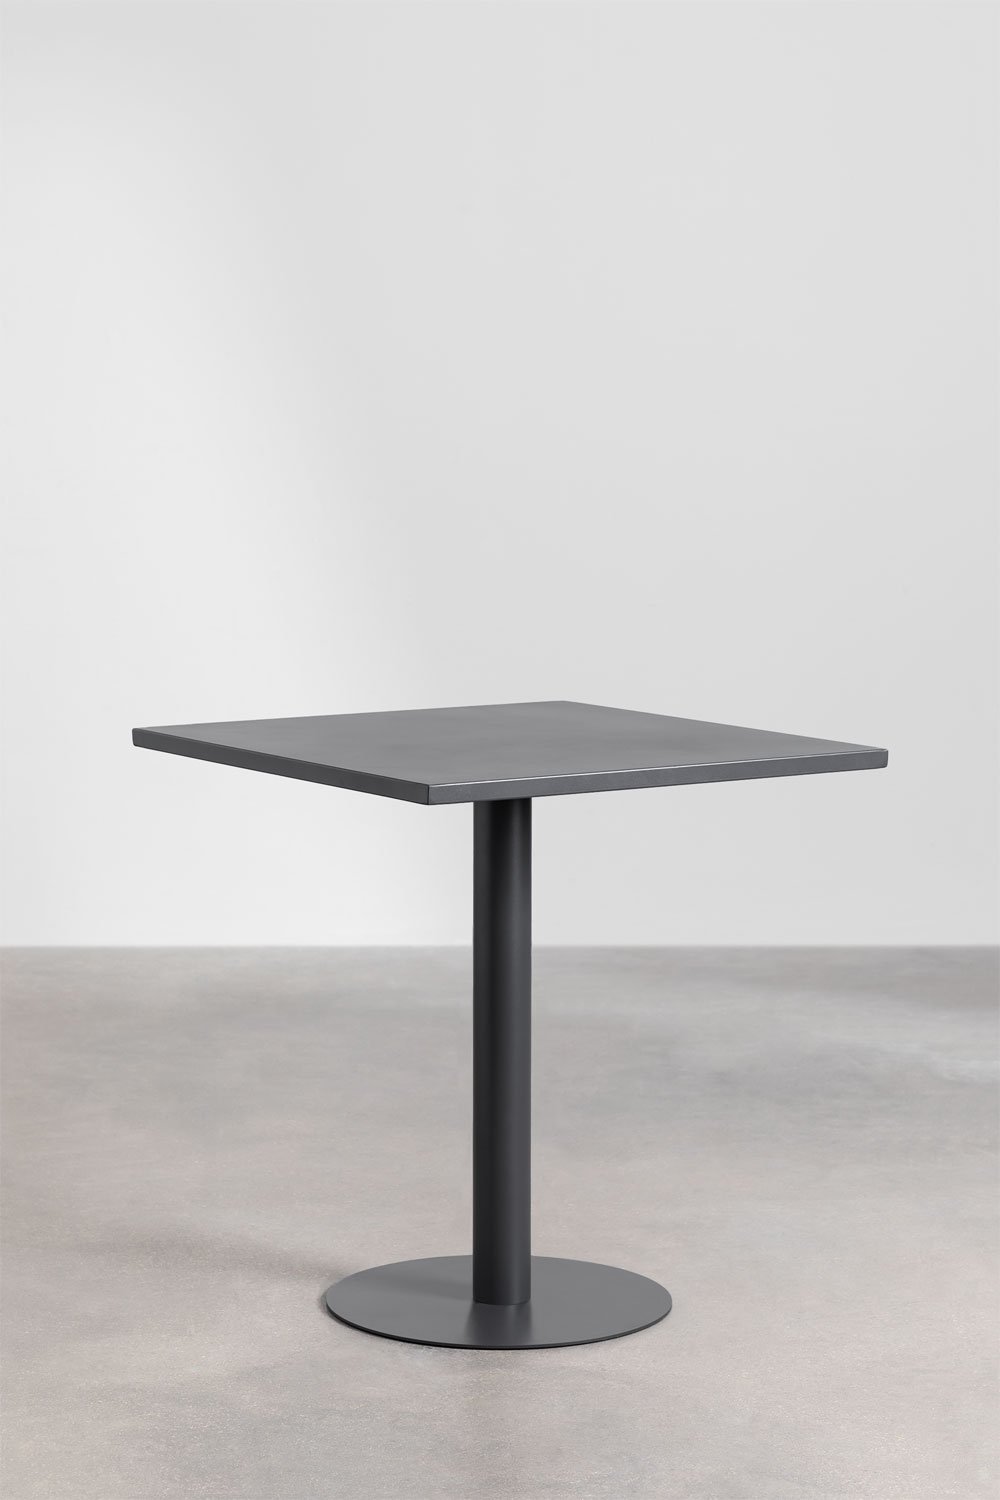 Table à manger carrée en métal (70x70 cm) Mizzi, image de la galerie 1